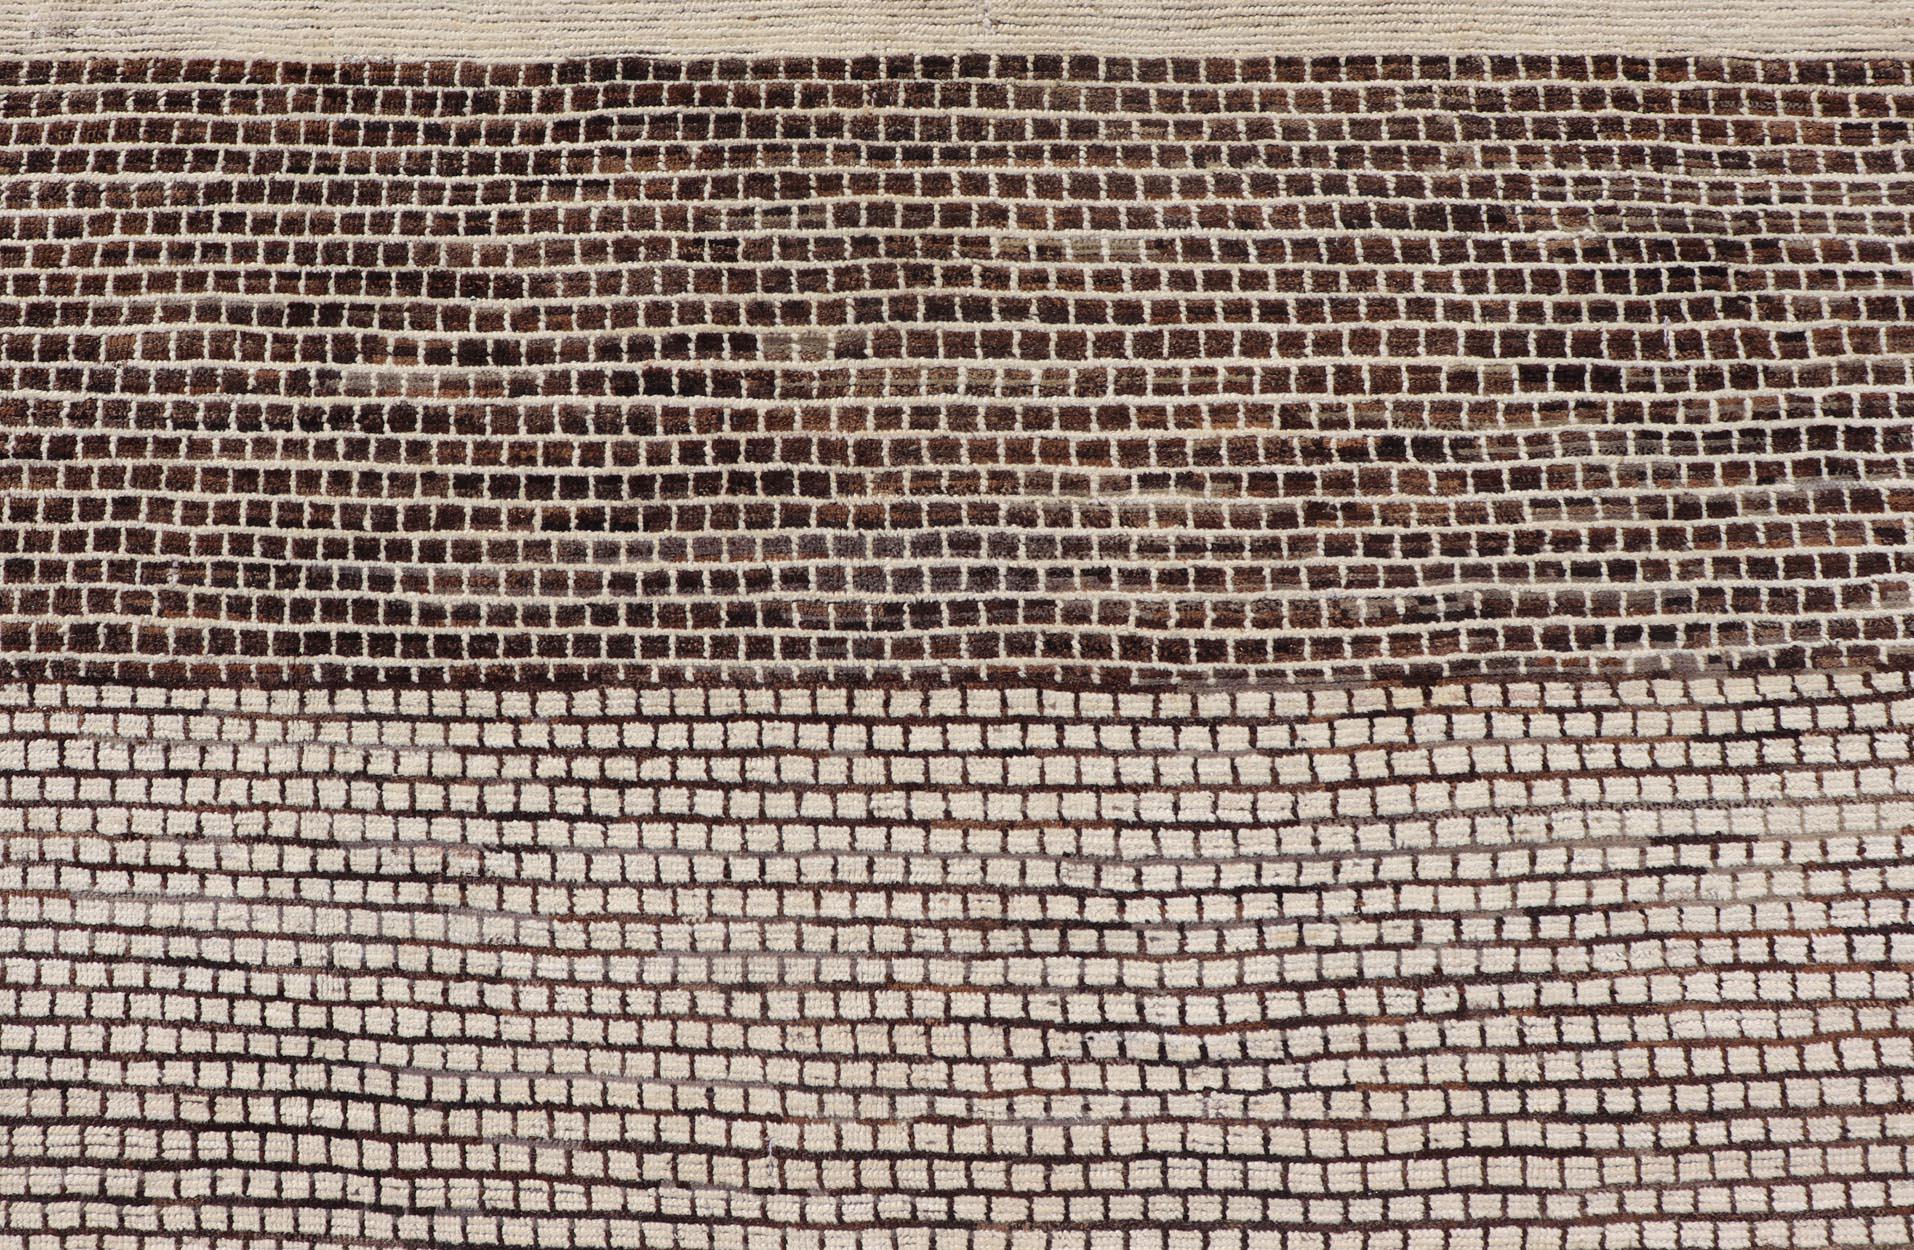 Moderner Teppich mit Ziegelsteinmuster in Braun und Creme von Keivan Woven Arts. 

Maße: 9'4 x 11'1.  

Dieser moderne Teppich wurde aus feiner Wolle handgeknüpft. Der Teppich zeichnet sich durch ein modernes geometrisches Ziegelsteinmuster aus, das